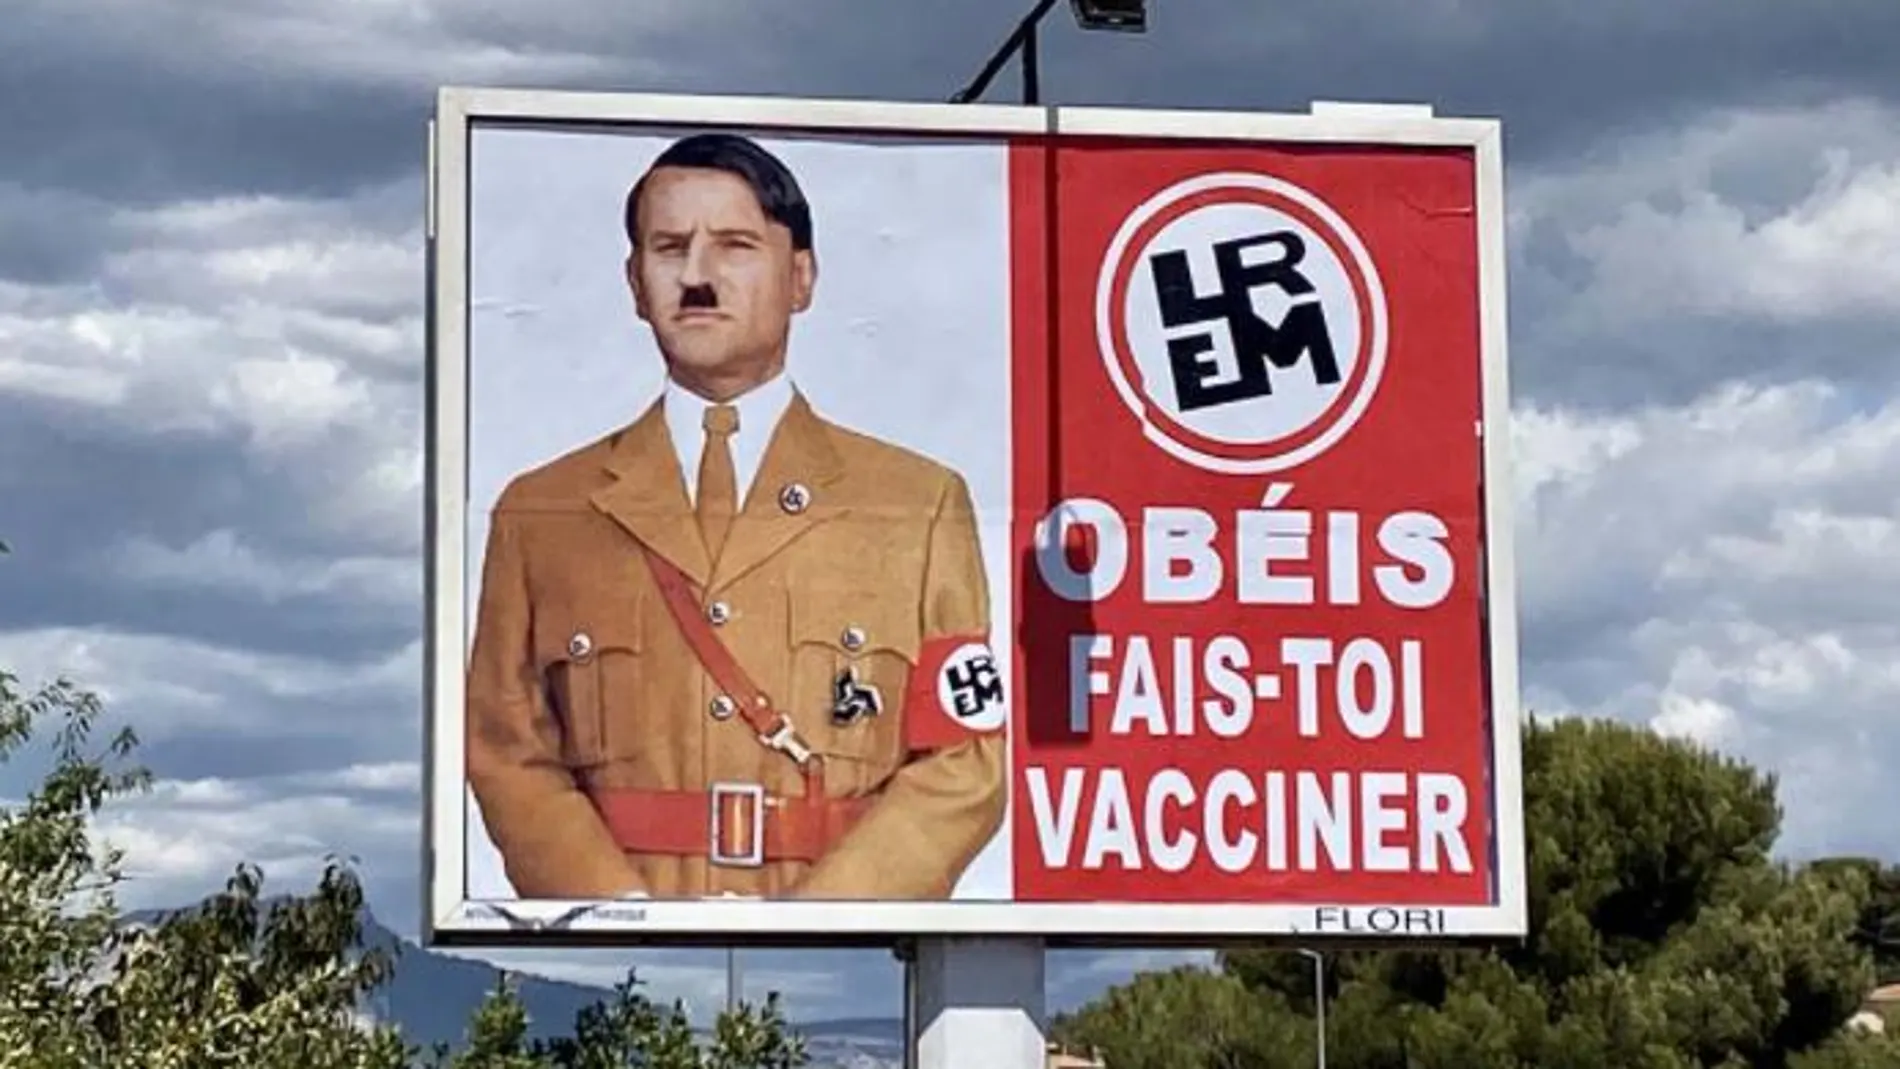 Imagen del polémico cartel en el que un Macron simbolizado como Hitler ordena la vacunación